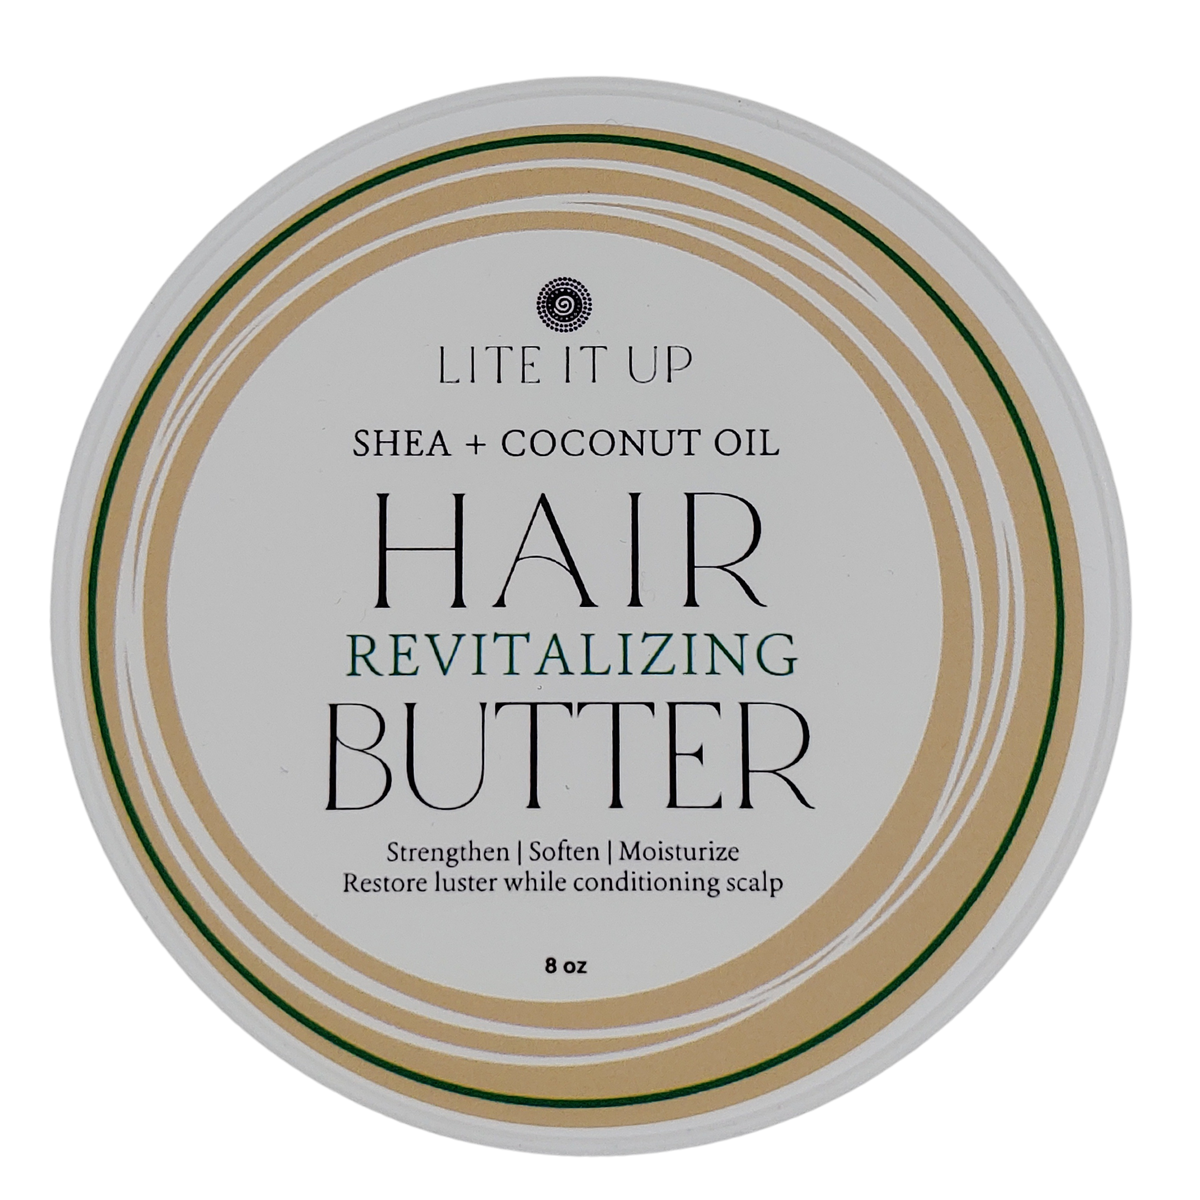 SHEA + COCONUT OIL HAIR REVITALIZING BUTTER